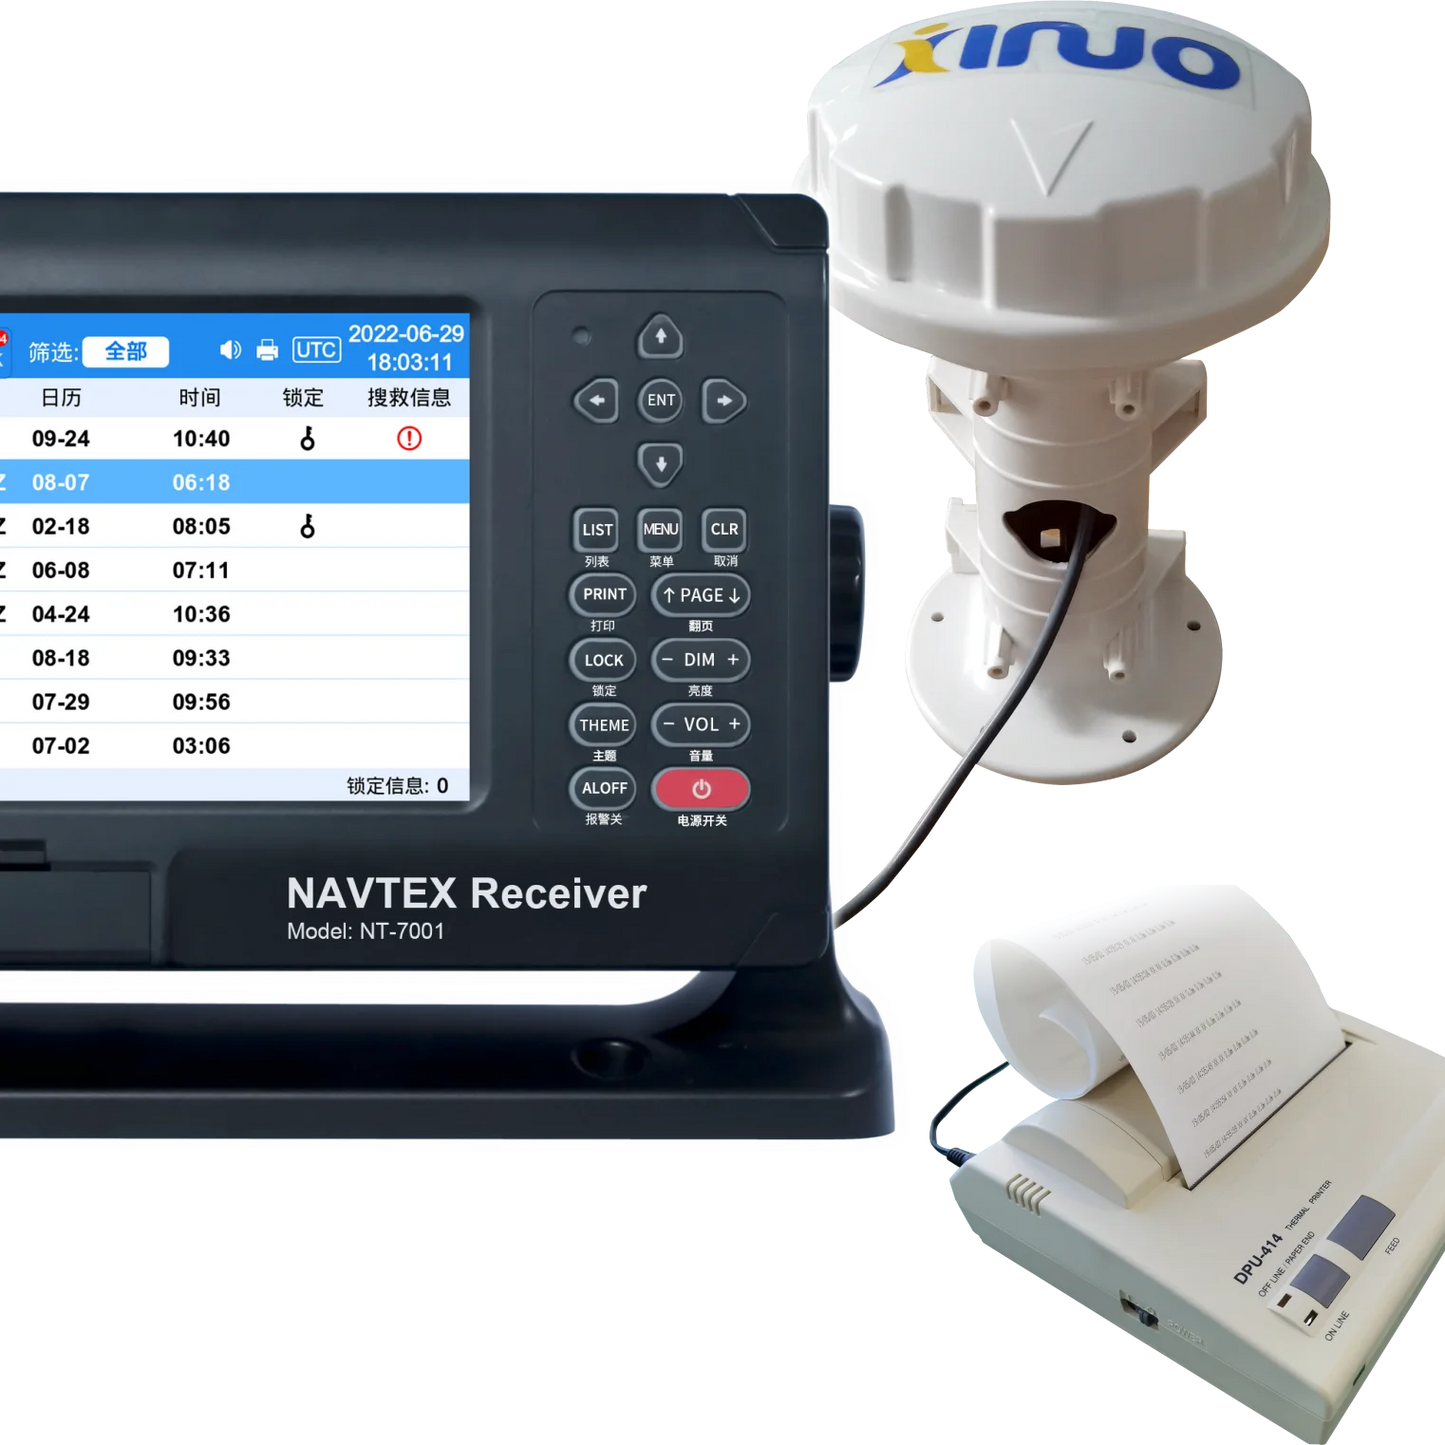 Électronique marine WWNWS XINUO NAVTEX récepteur NT-7001, écran LCD TFT 8 pouces, prise en charge de l'imprimante UPD-414, standard IMO 